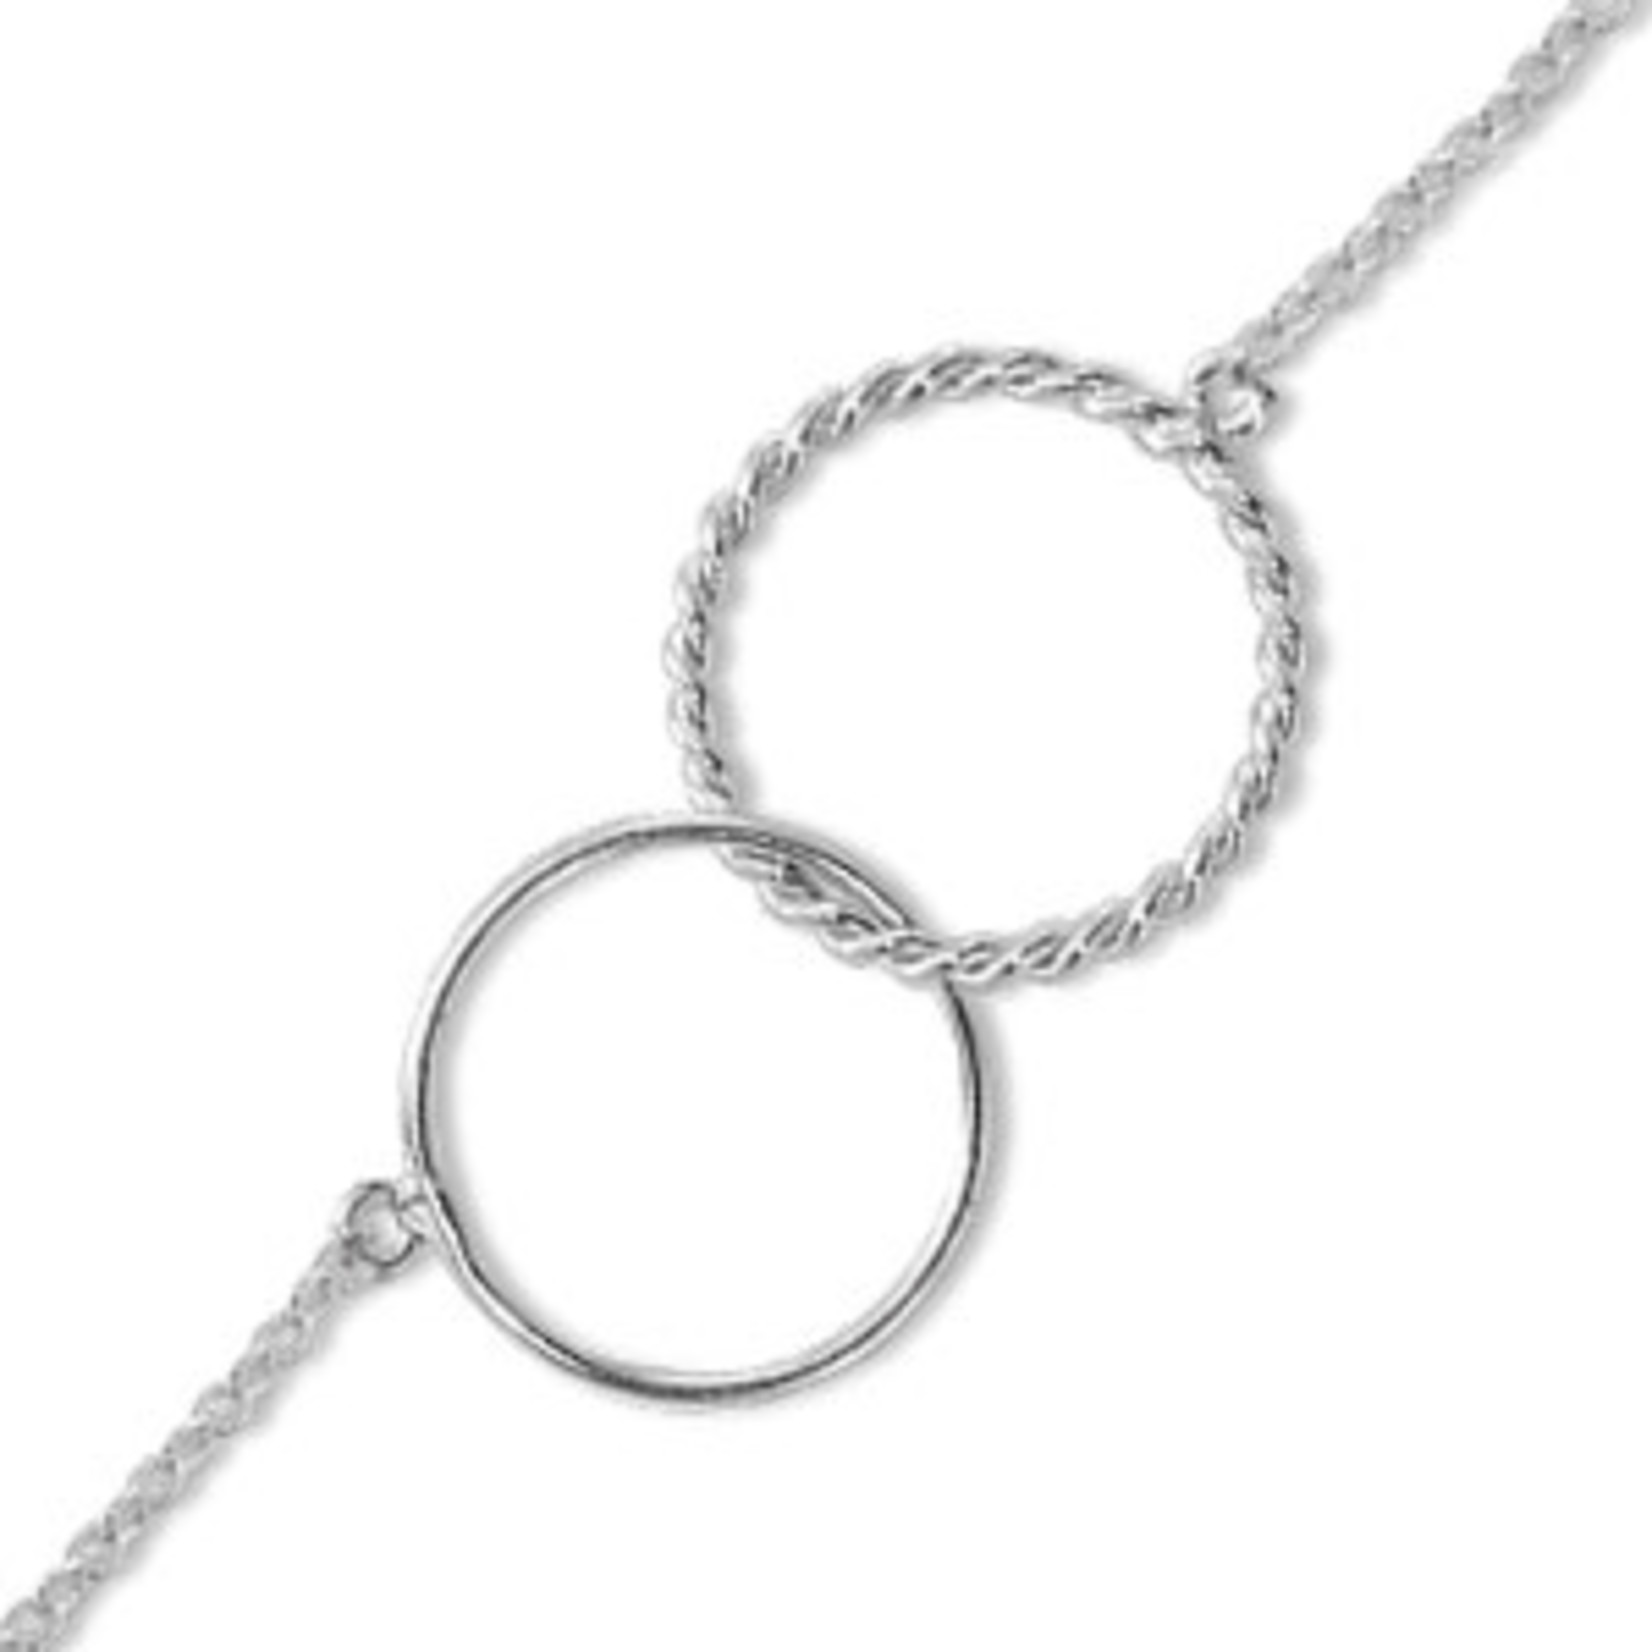 Silver Interlocking Circle Bracelet